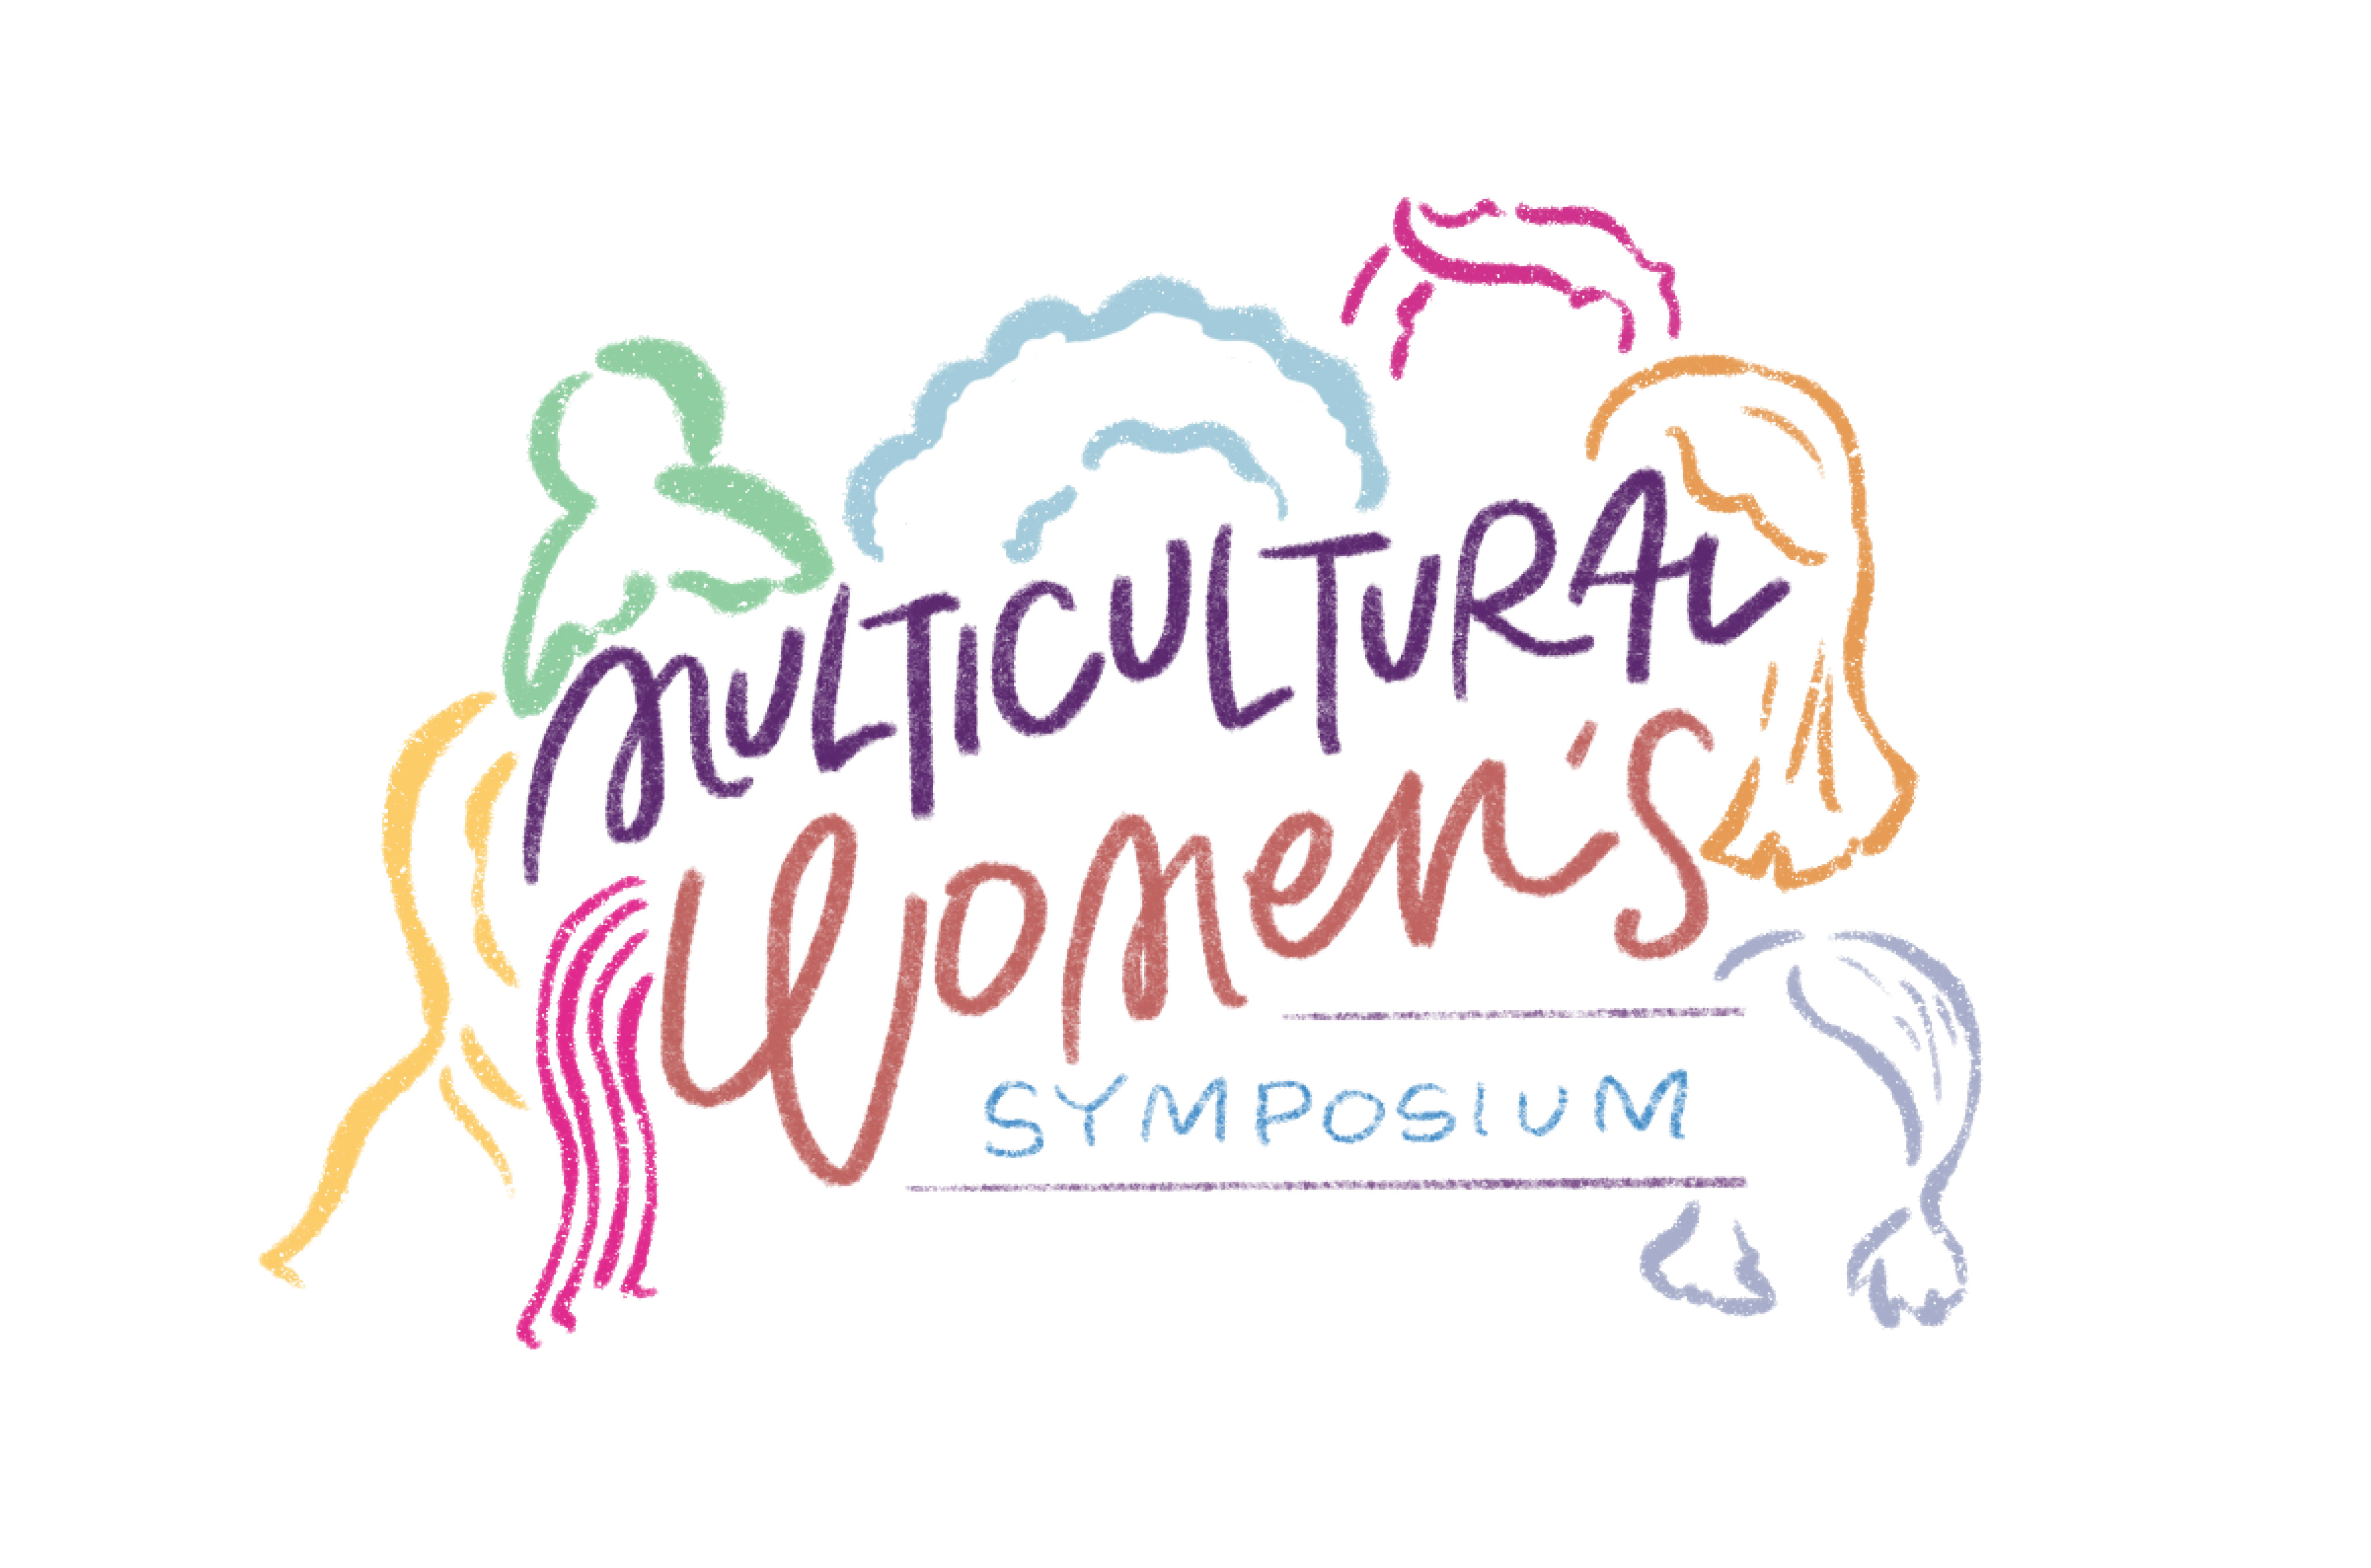 Multicultural Women's Symposium